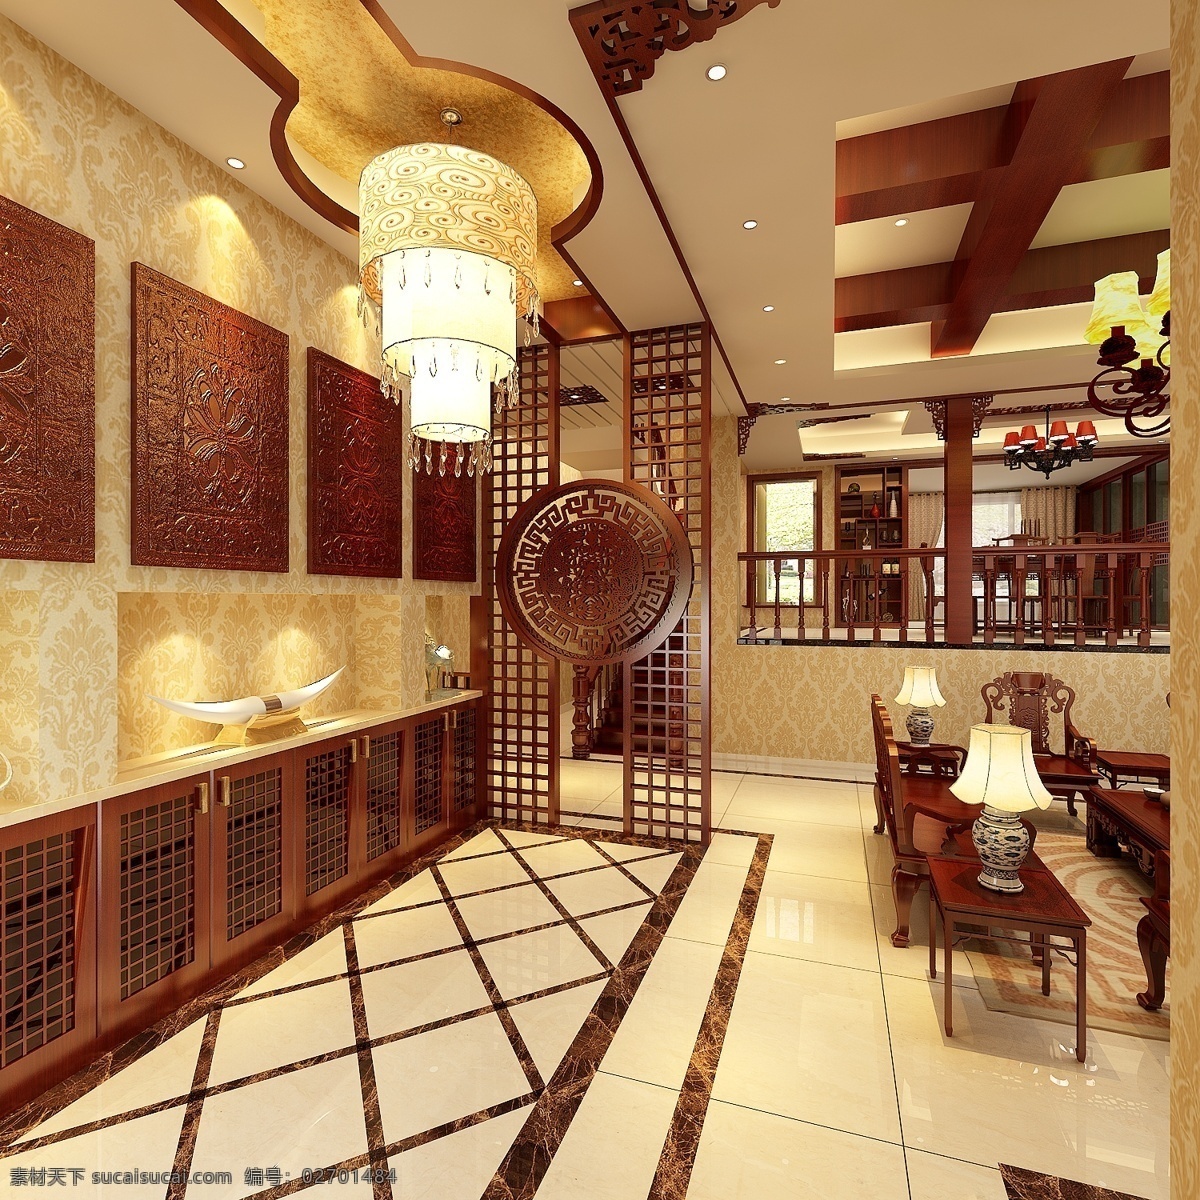 中式 餐厅 设计图 3d模型 灯具模型 中式设计 餐厅模型 3d模型素材 室内装饰模型